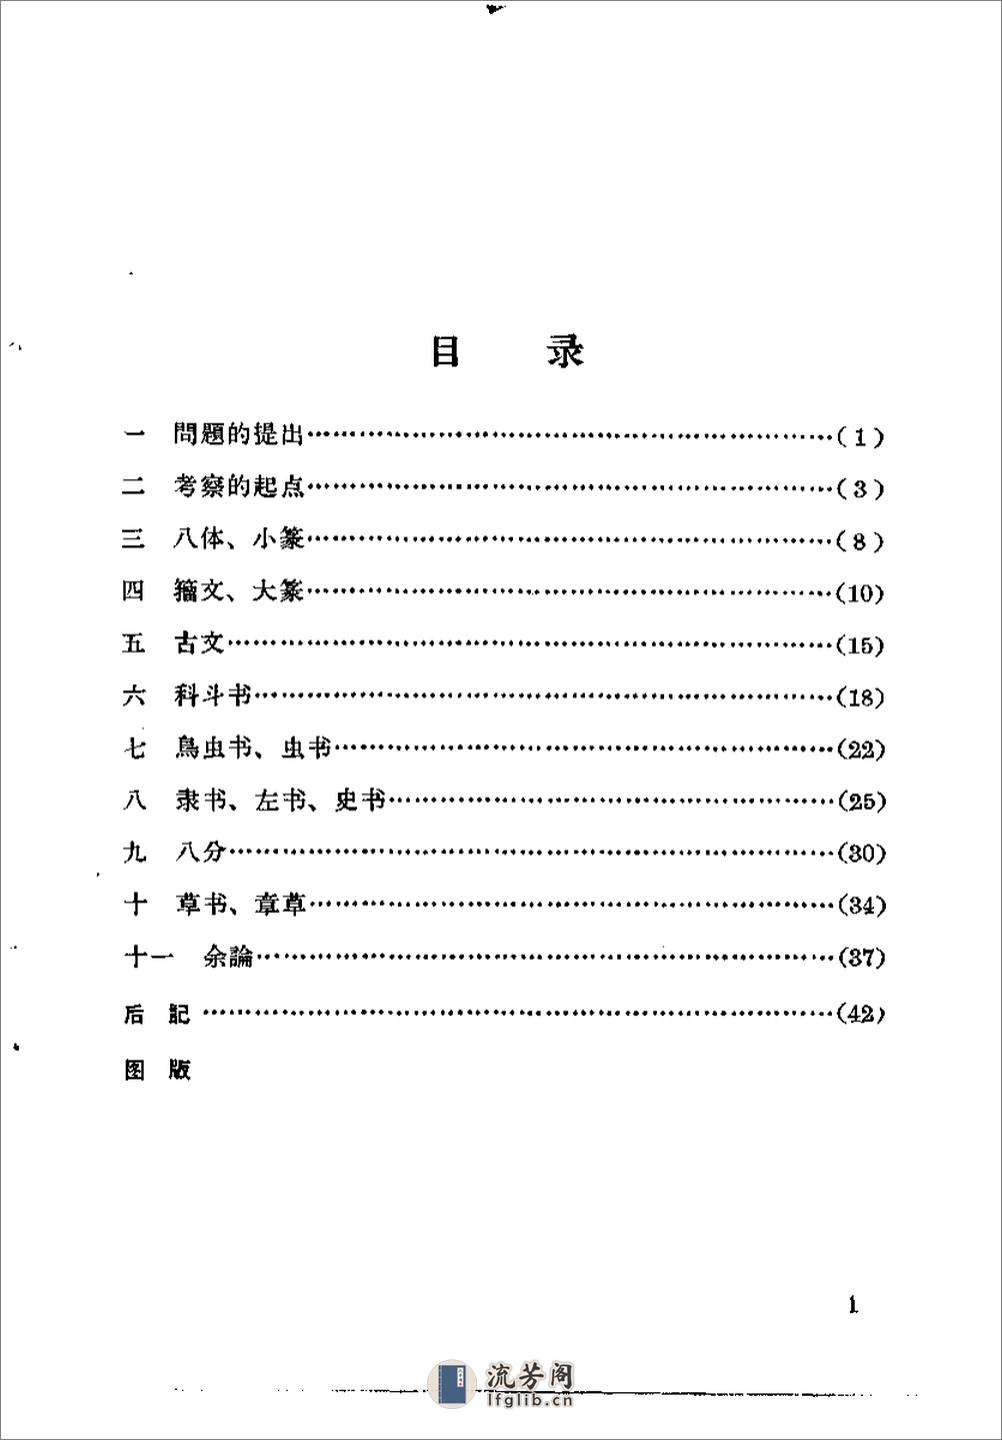 《古代字体论稿》_启功 著_文物出版社 1964年 - 第4页预览图